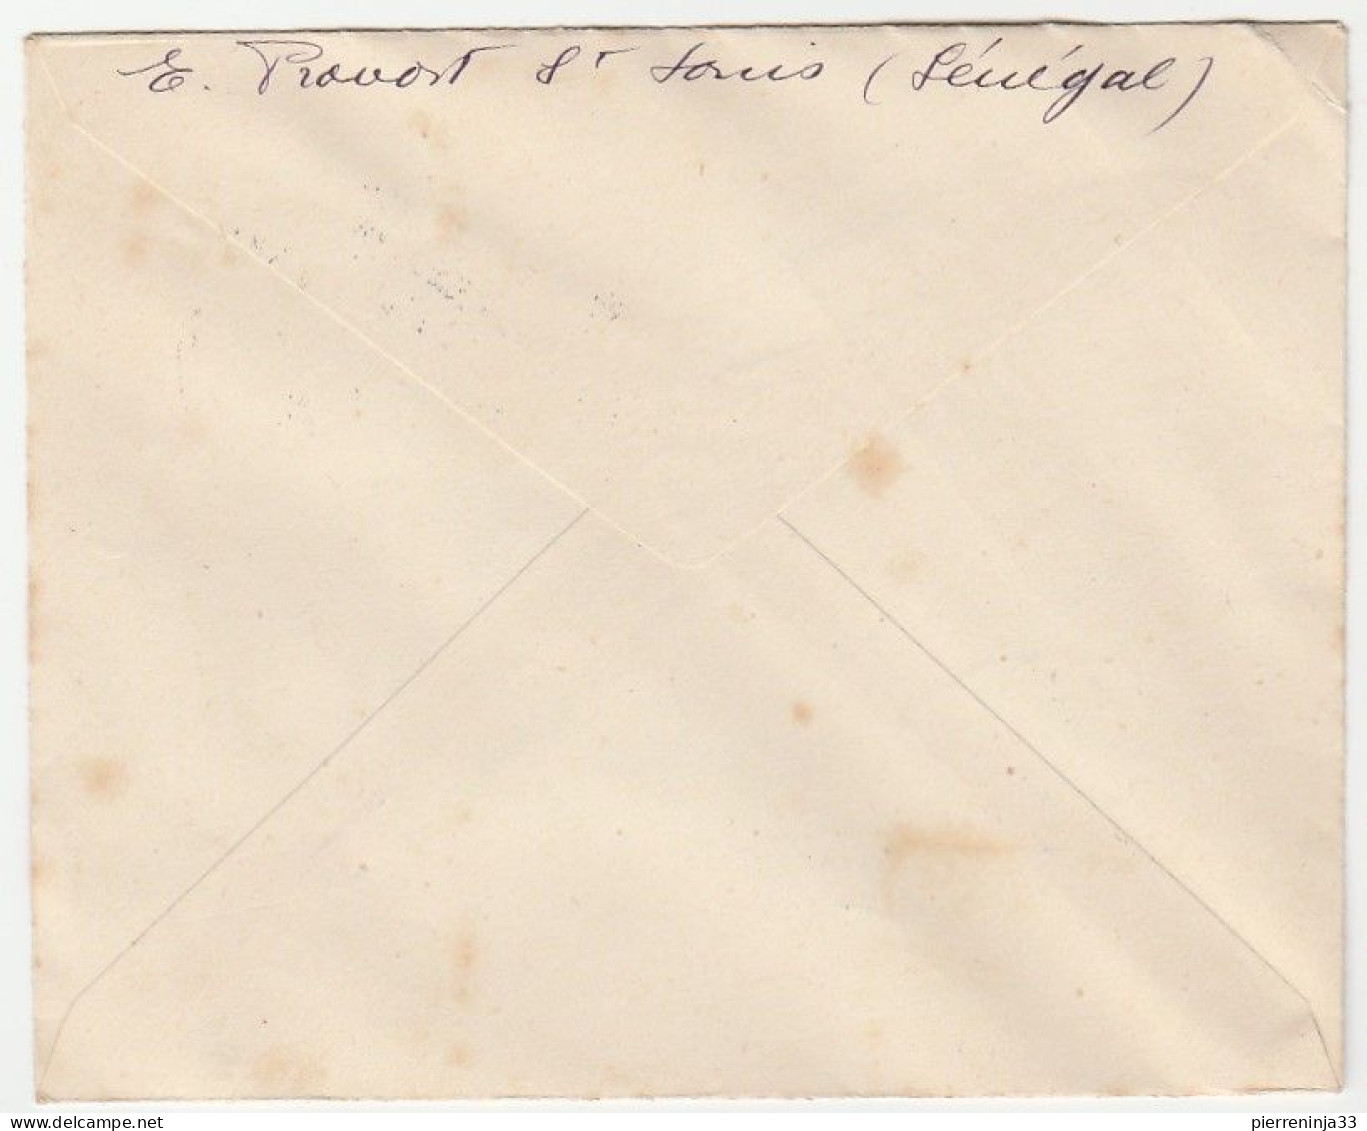 Lettre 1ère Visite D'un Président De La République En Afrique Noire, St Louis Du Sénégal, 1947 - Lettres & Documents